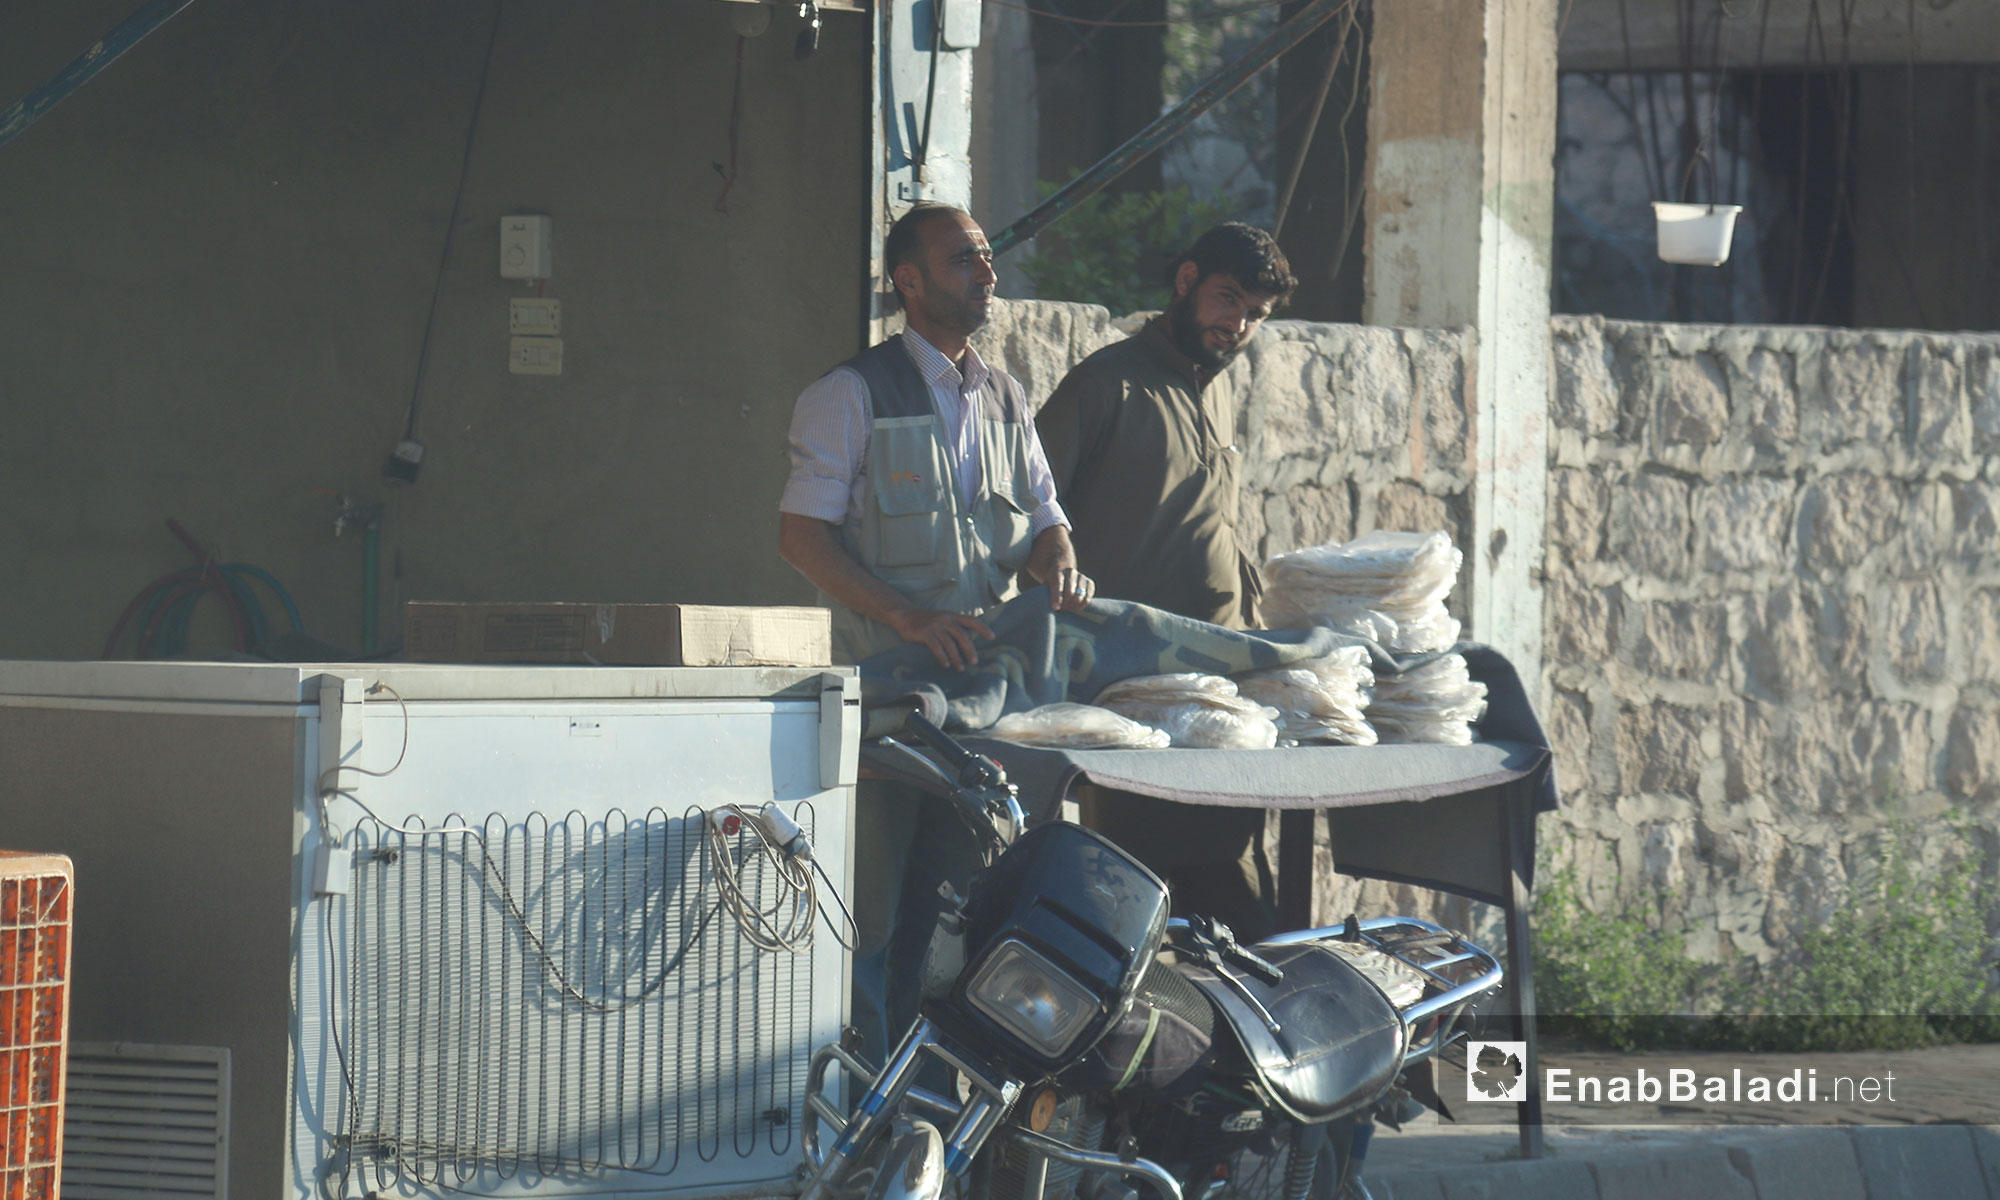 مركز بيع وتوزيع الخبز في مدينة سراقب - 17 حزيران 2017 (عنب بلدي)